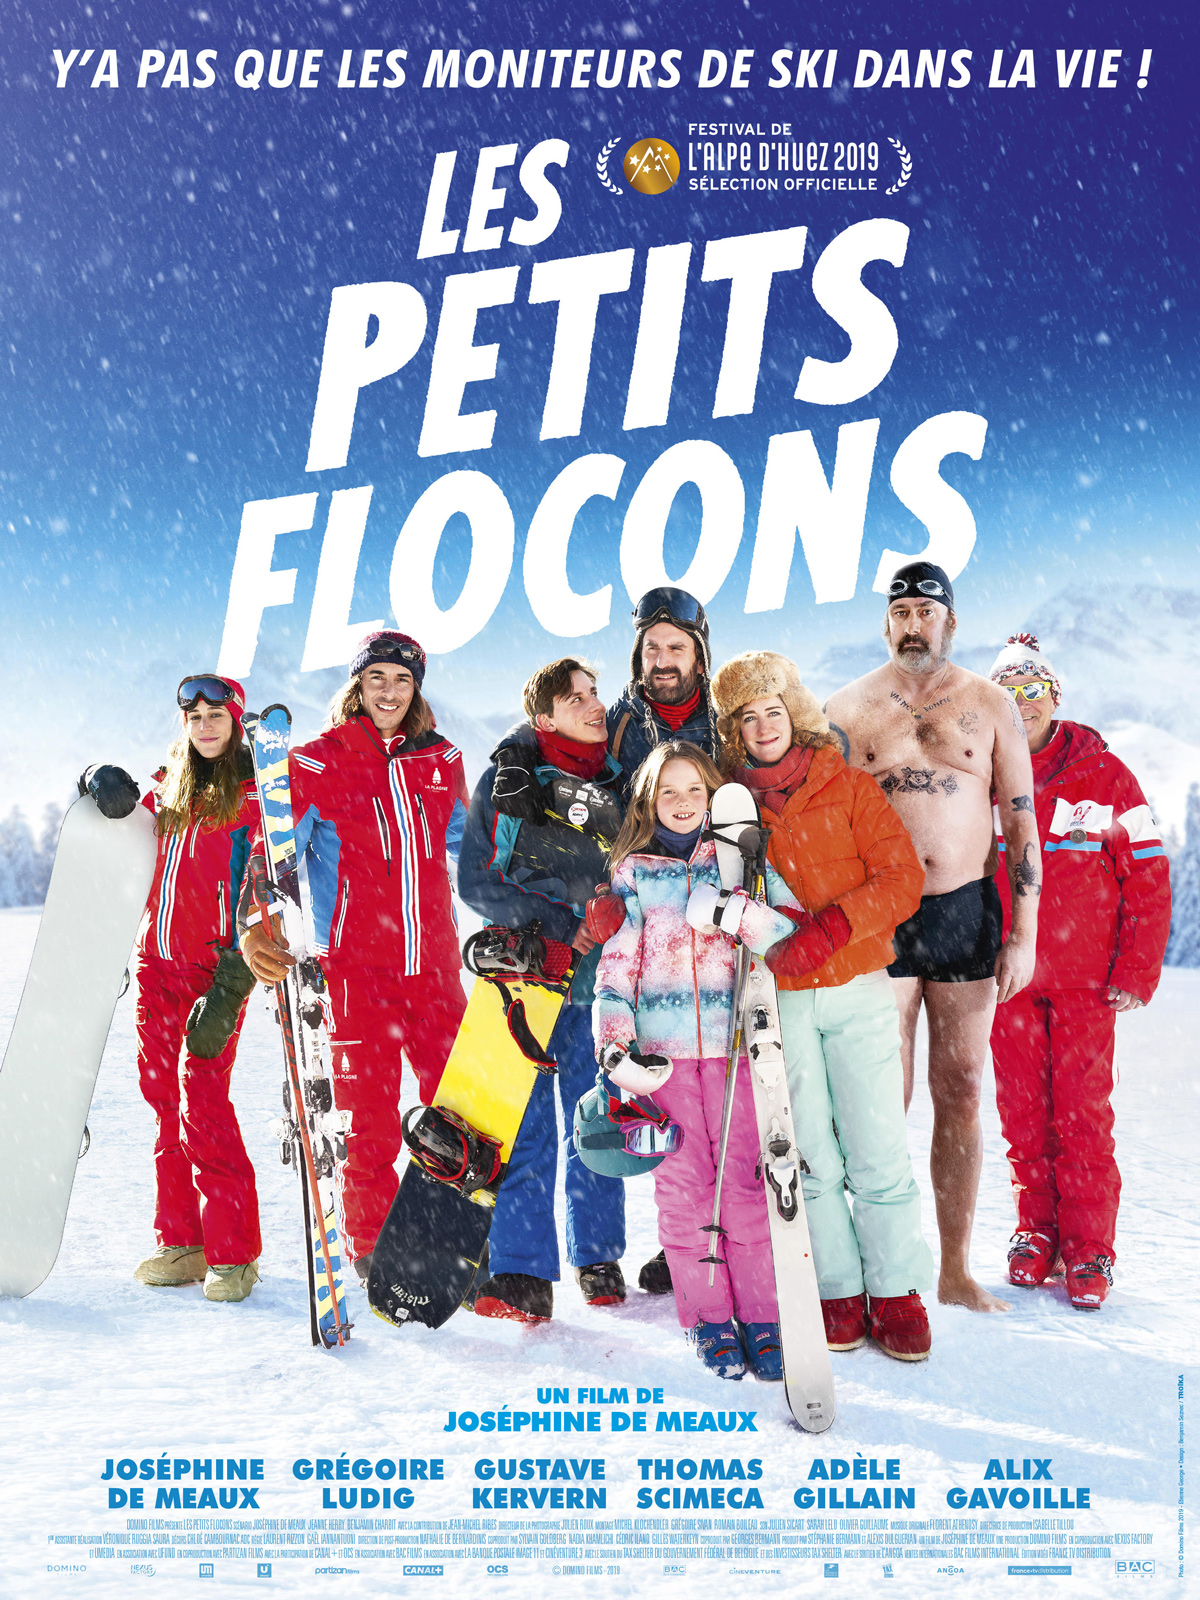 Les Petits Flocons - film 2018 - AlloCiné